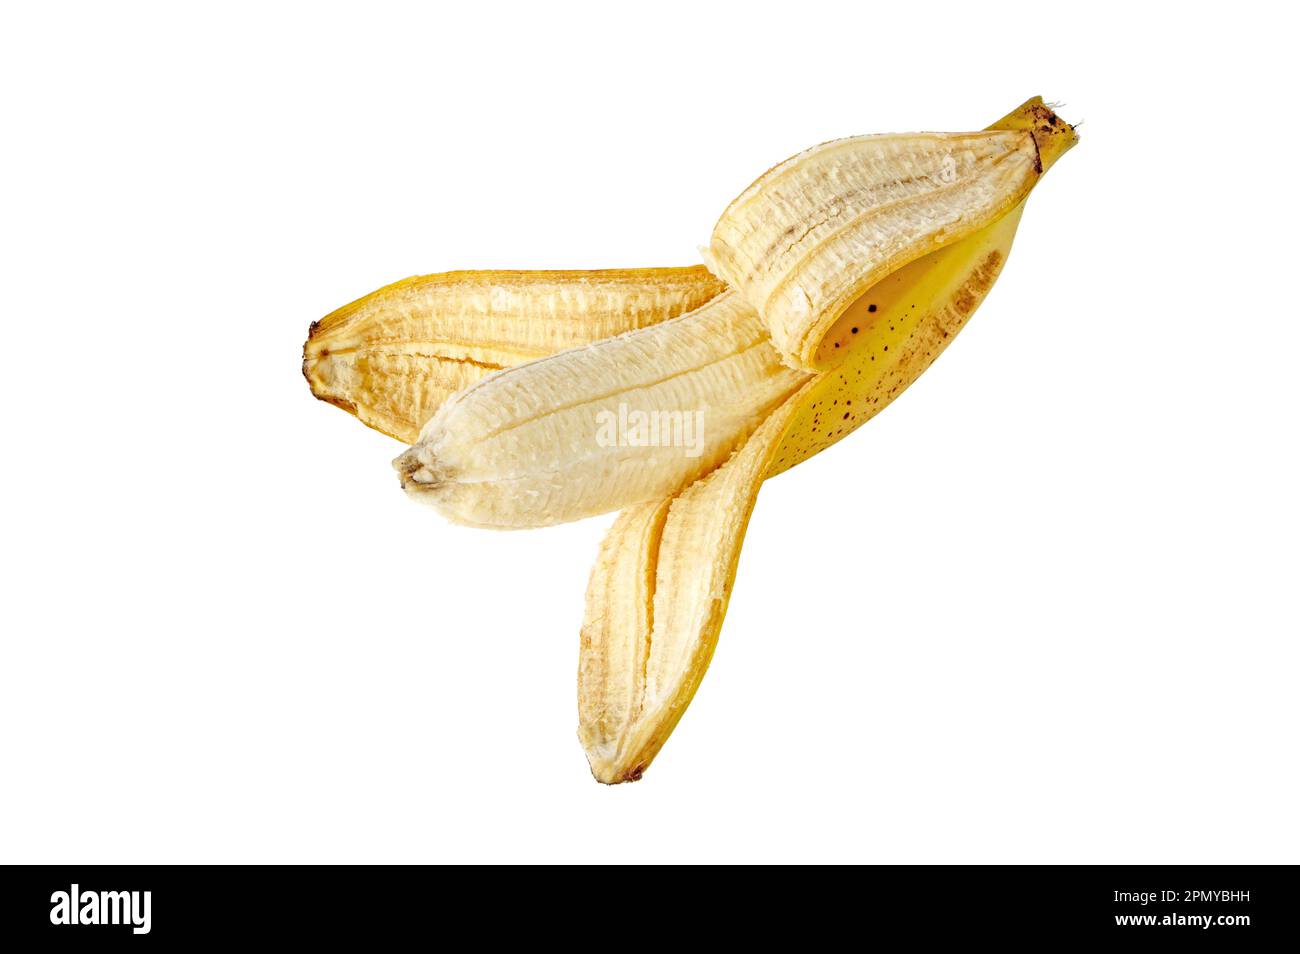 Halb geschälte Banane mit Zuckerflecken auf weiß isoliert. Reife, gelb gefleckte Früchte. Cavendische Sorte von Musa acuminata. Stockfoto